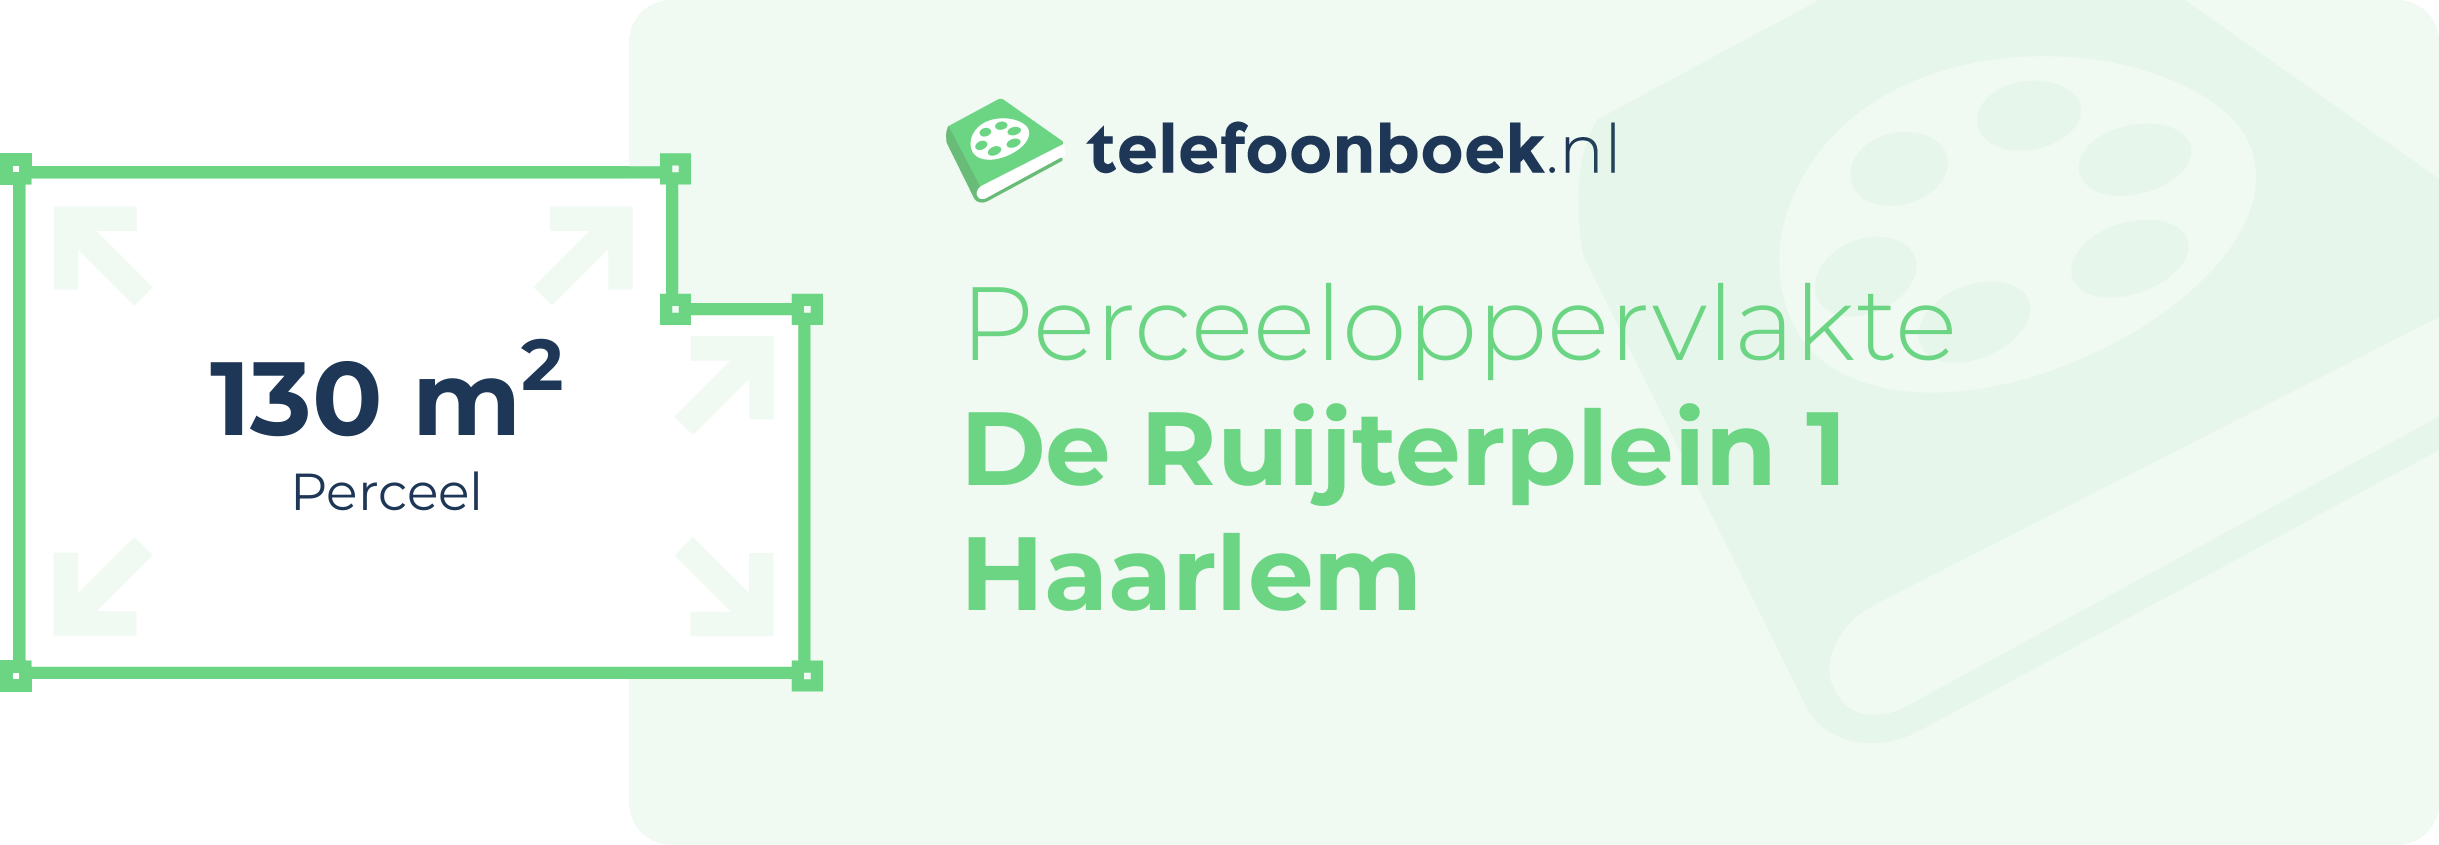 Perceeloppervlakte De Ruijterplein 1 Haarlem